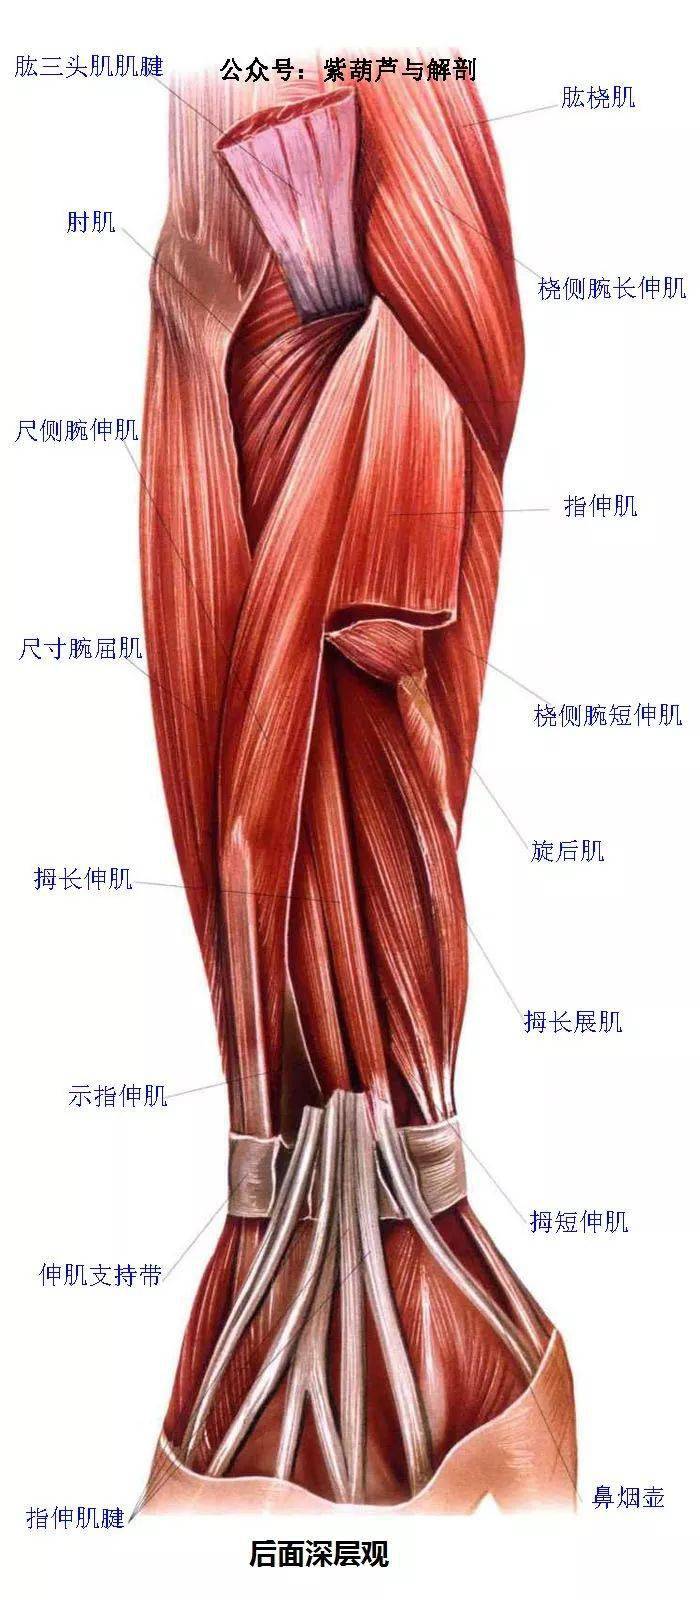 高清| 前臂与手部解剖肌肉图谱